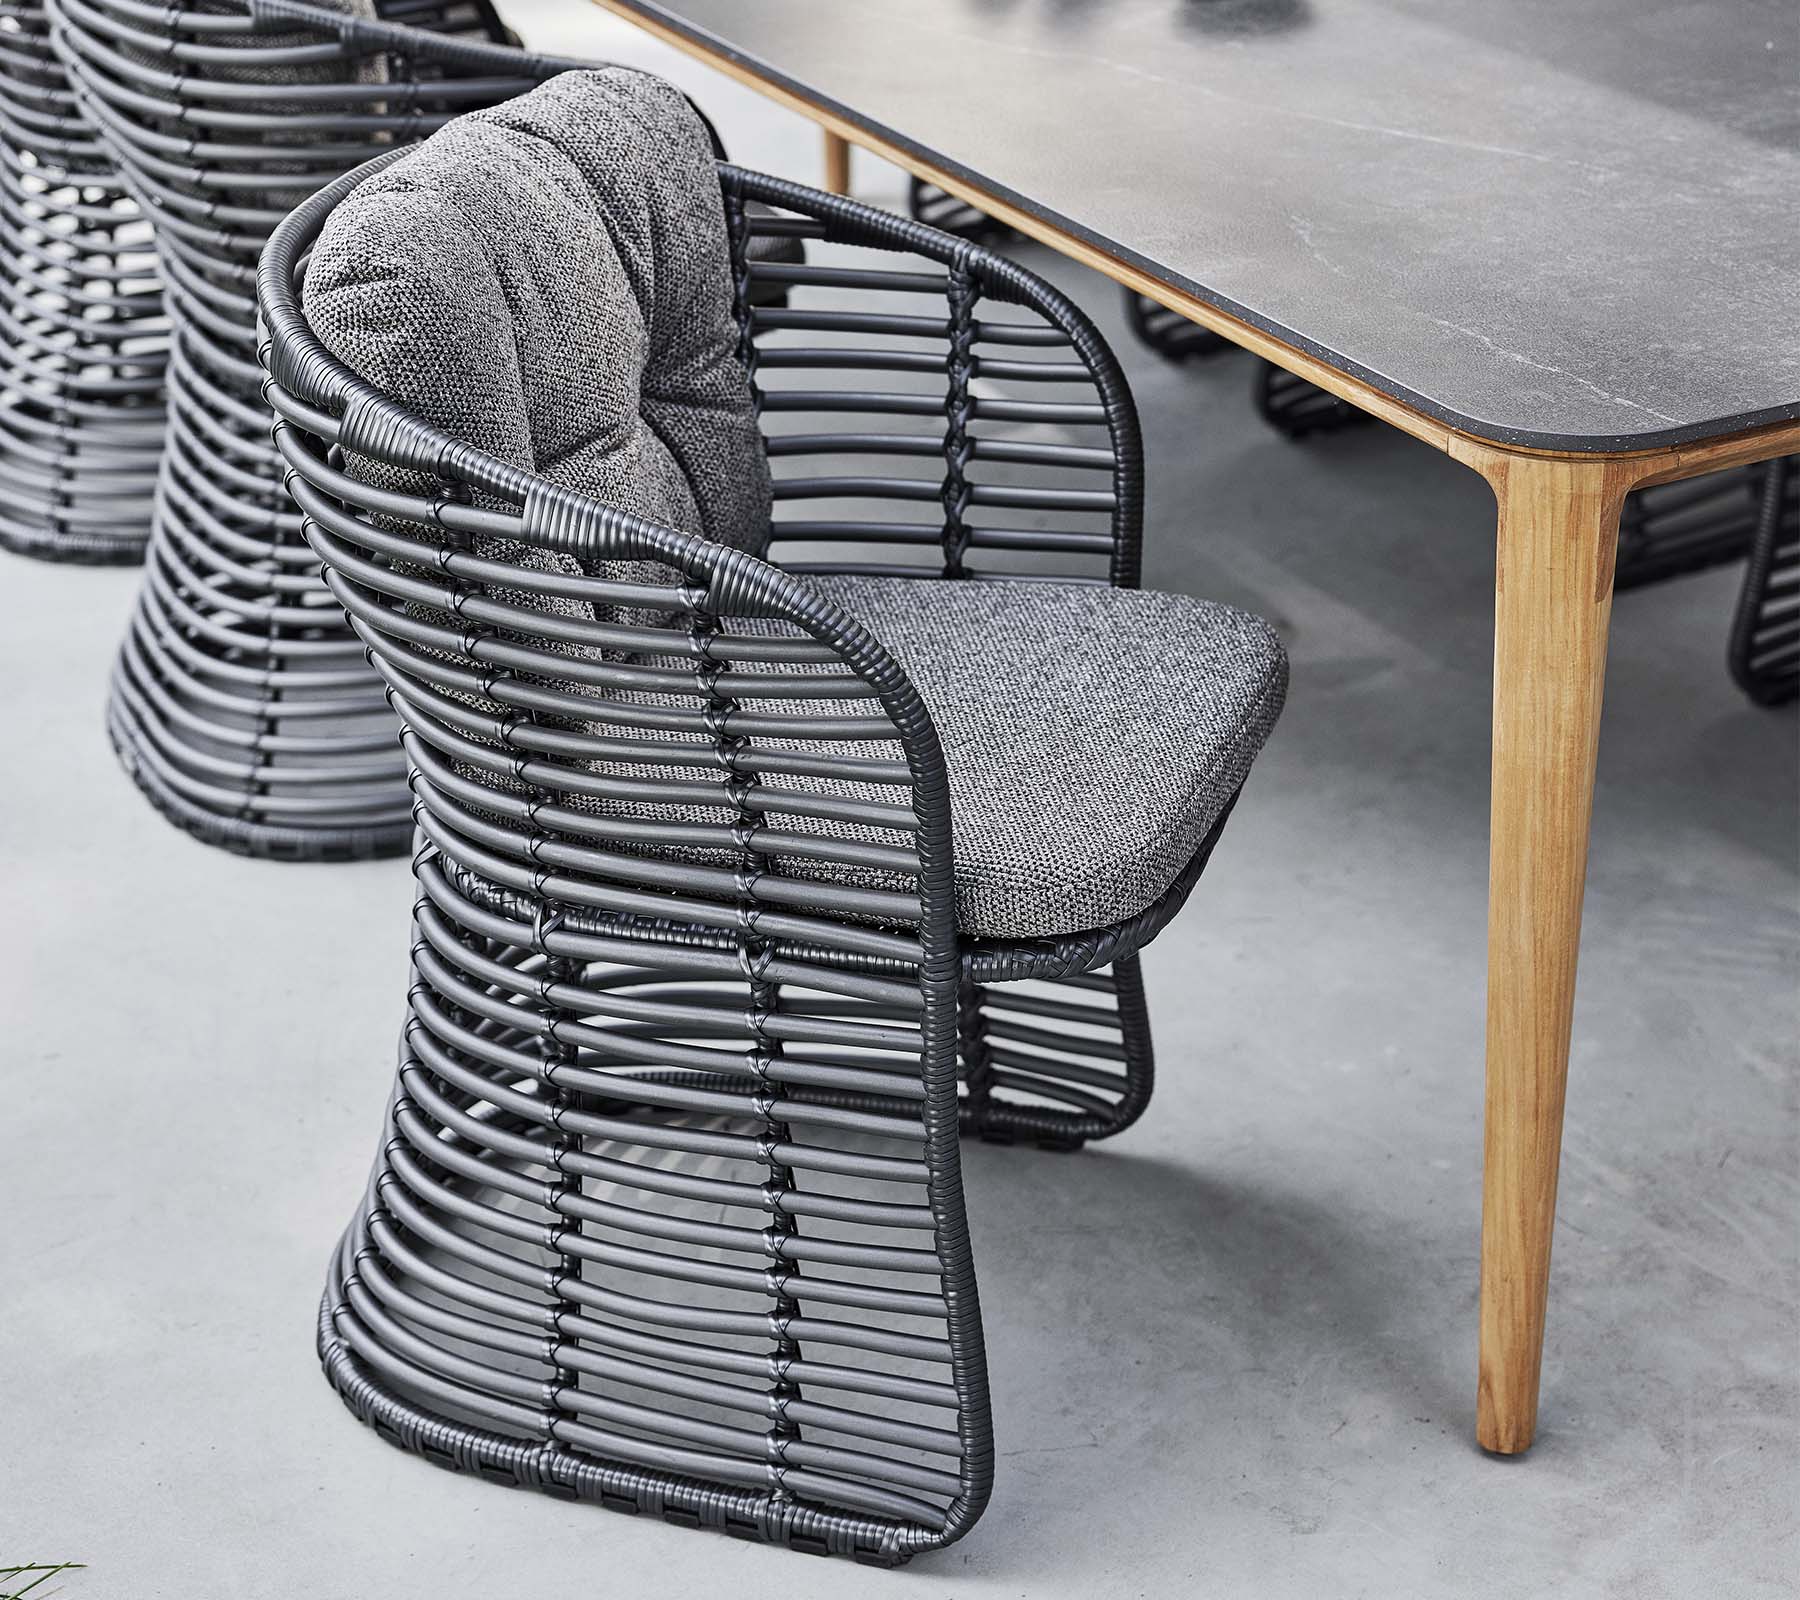 Cane-Line - Basket chair | 54100U